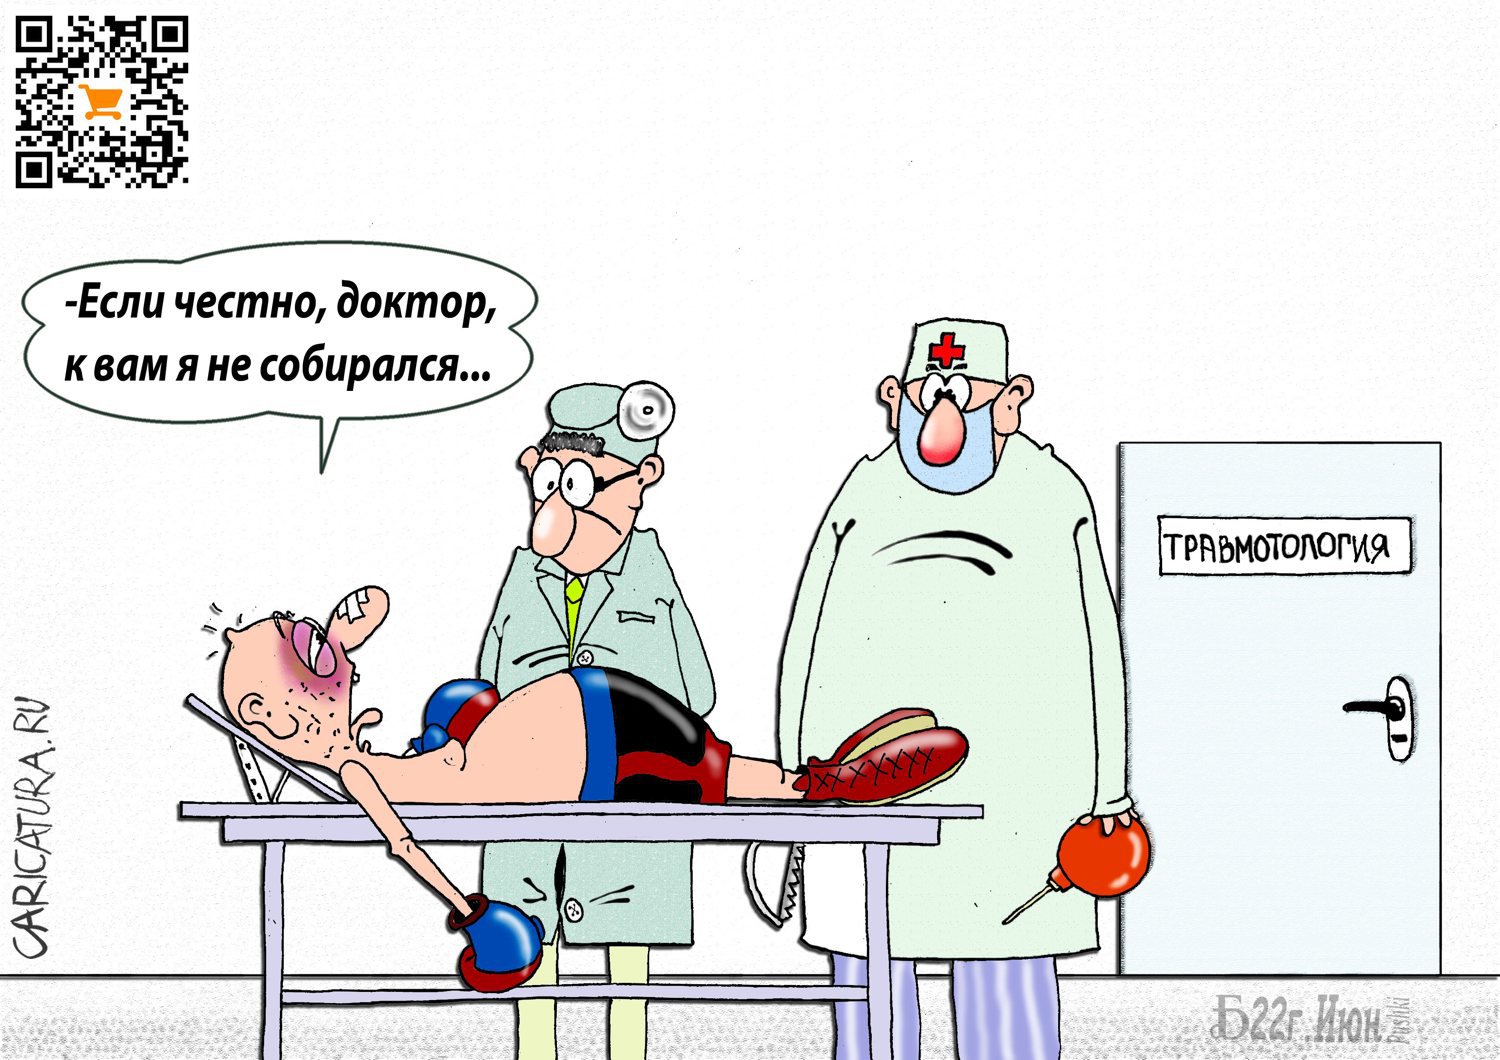 Карикатура "ПроВнеплановое посещение", Борис Демин